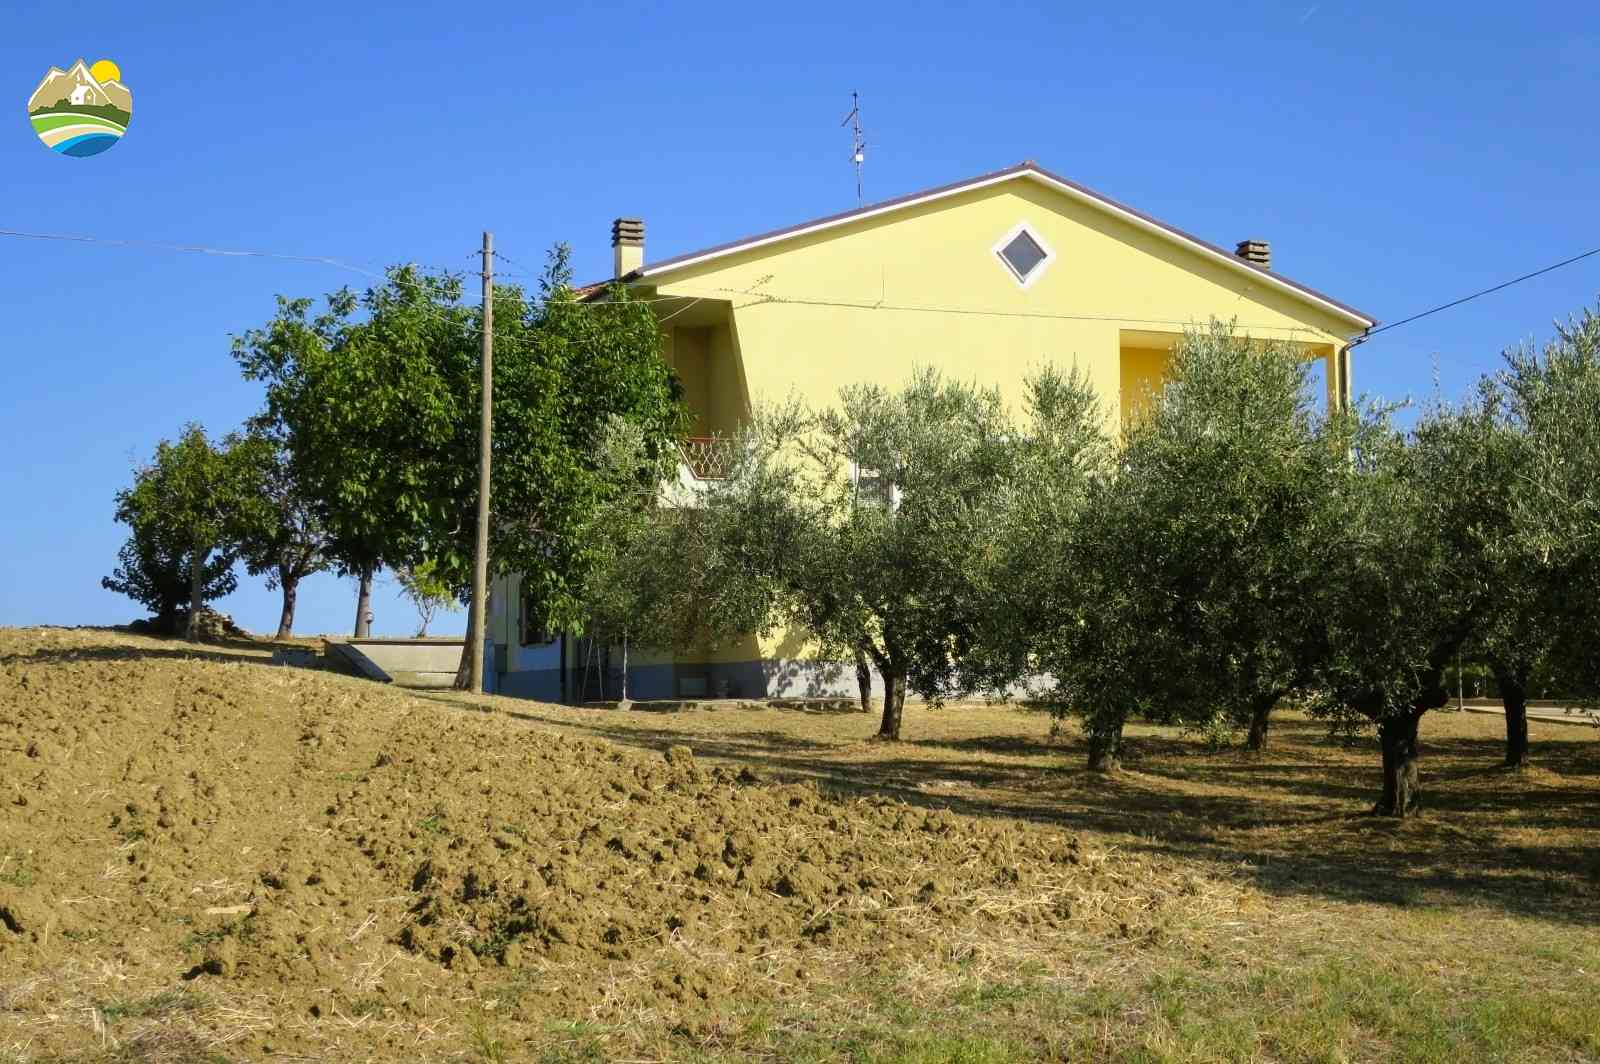 Casa di campagna Casa di campagna in vendita Montefino (TE), Casa Fiorella - Montefino - EUR 197.607 590